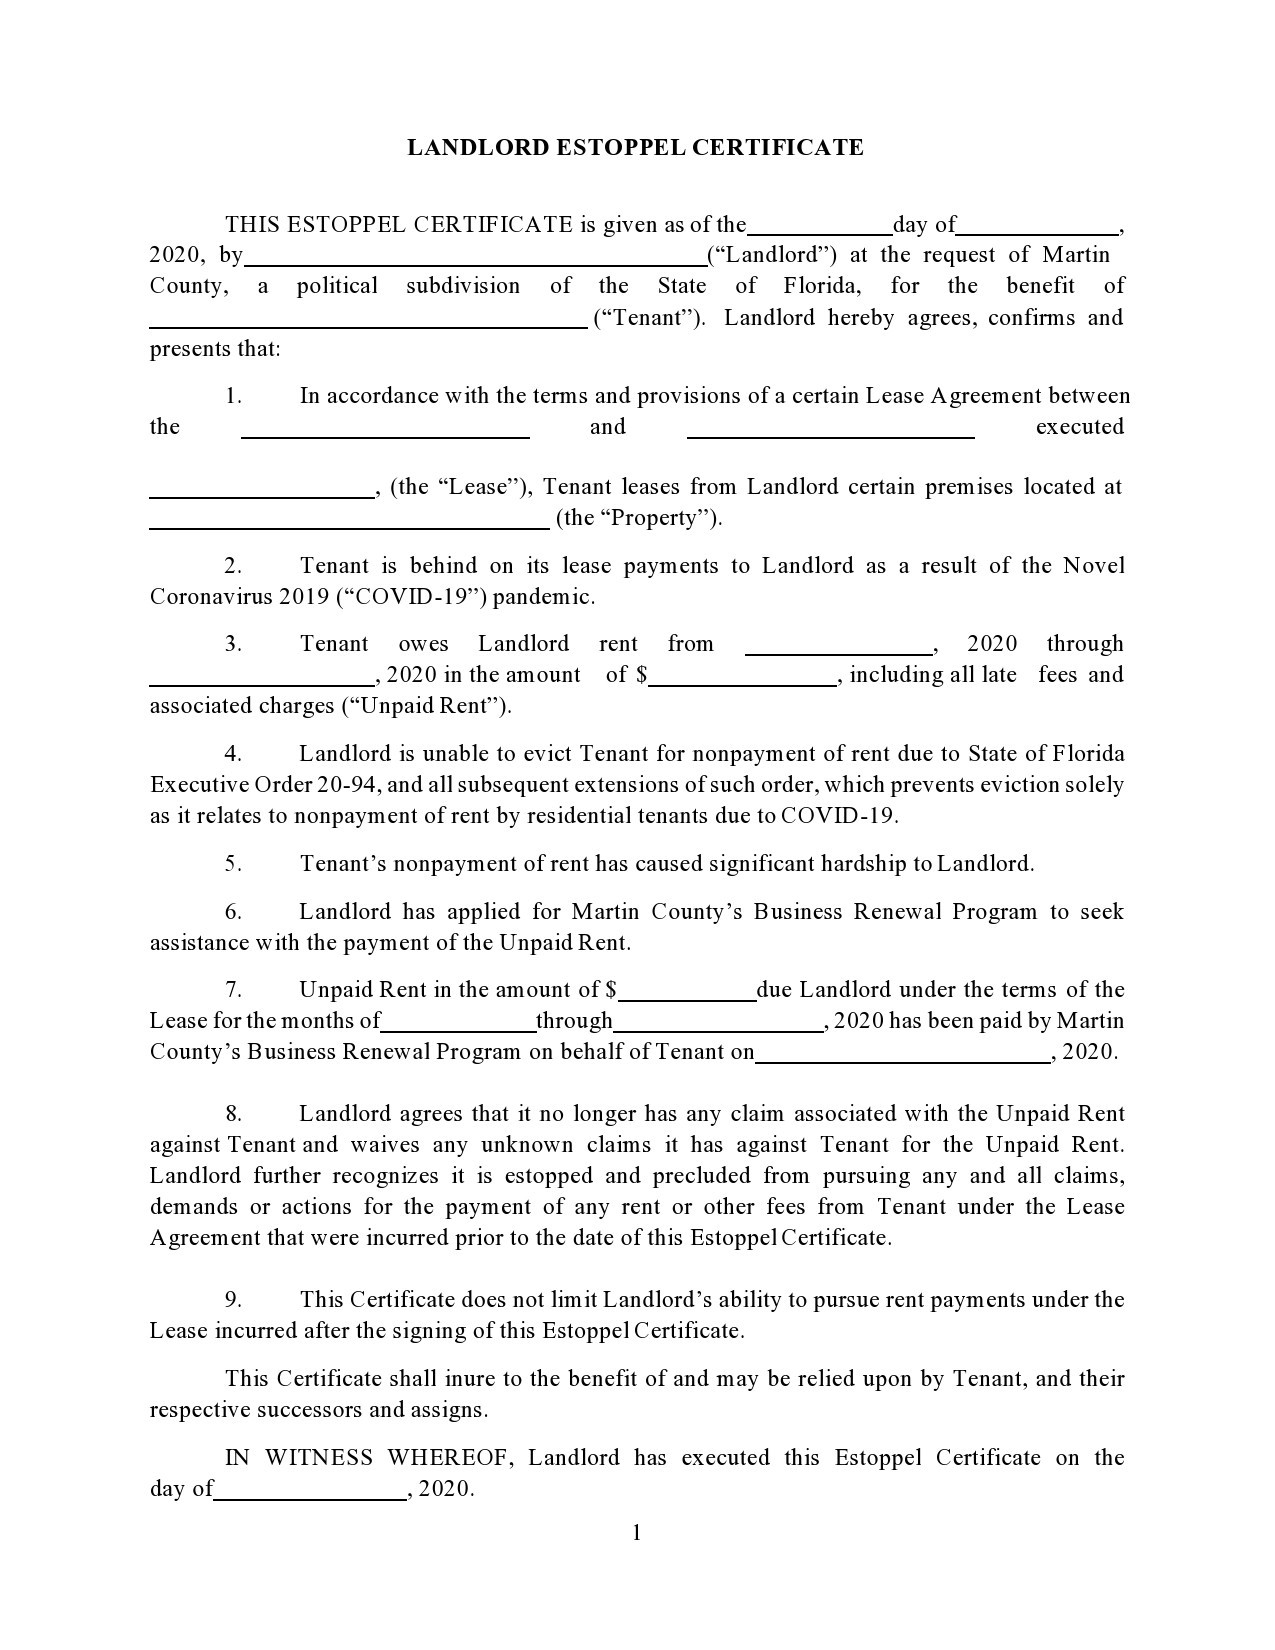 Free estoppel certificate form 12